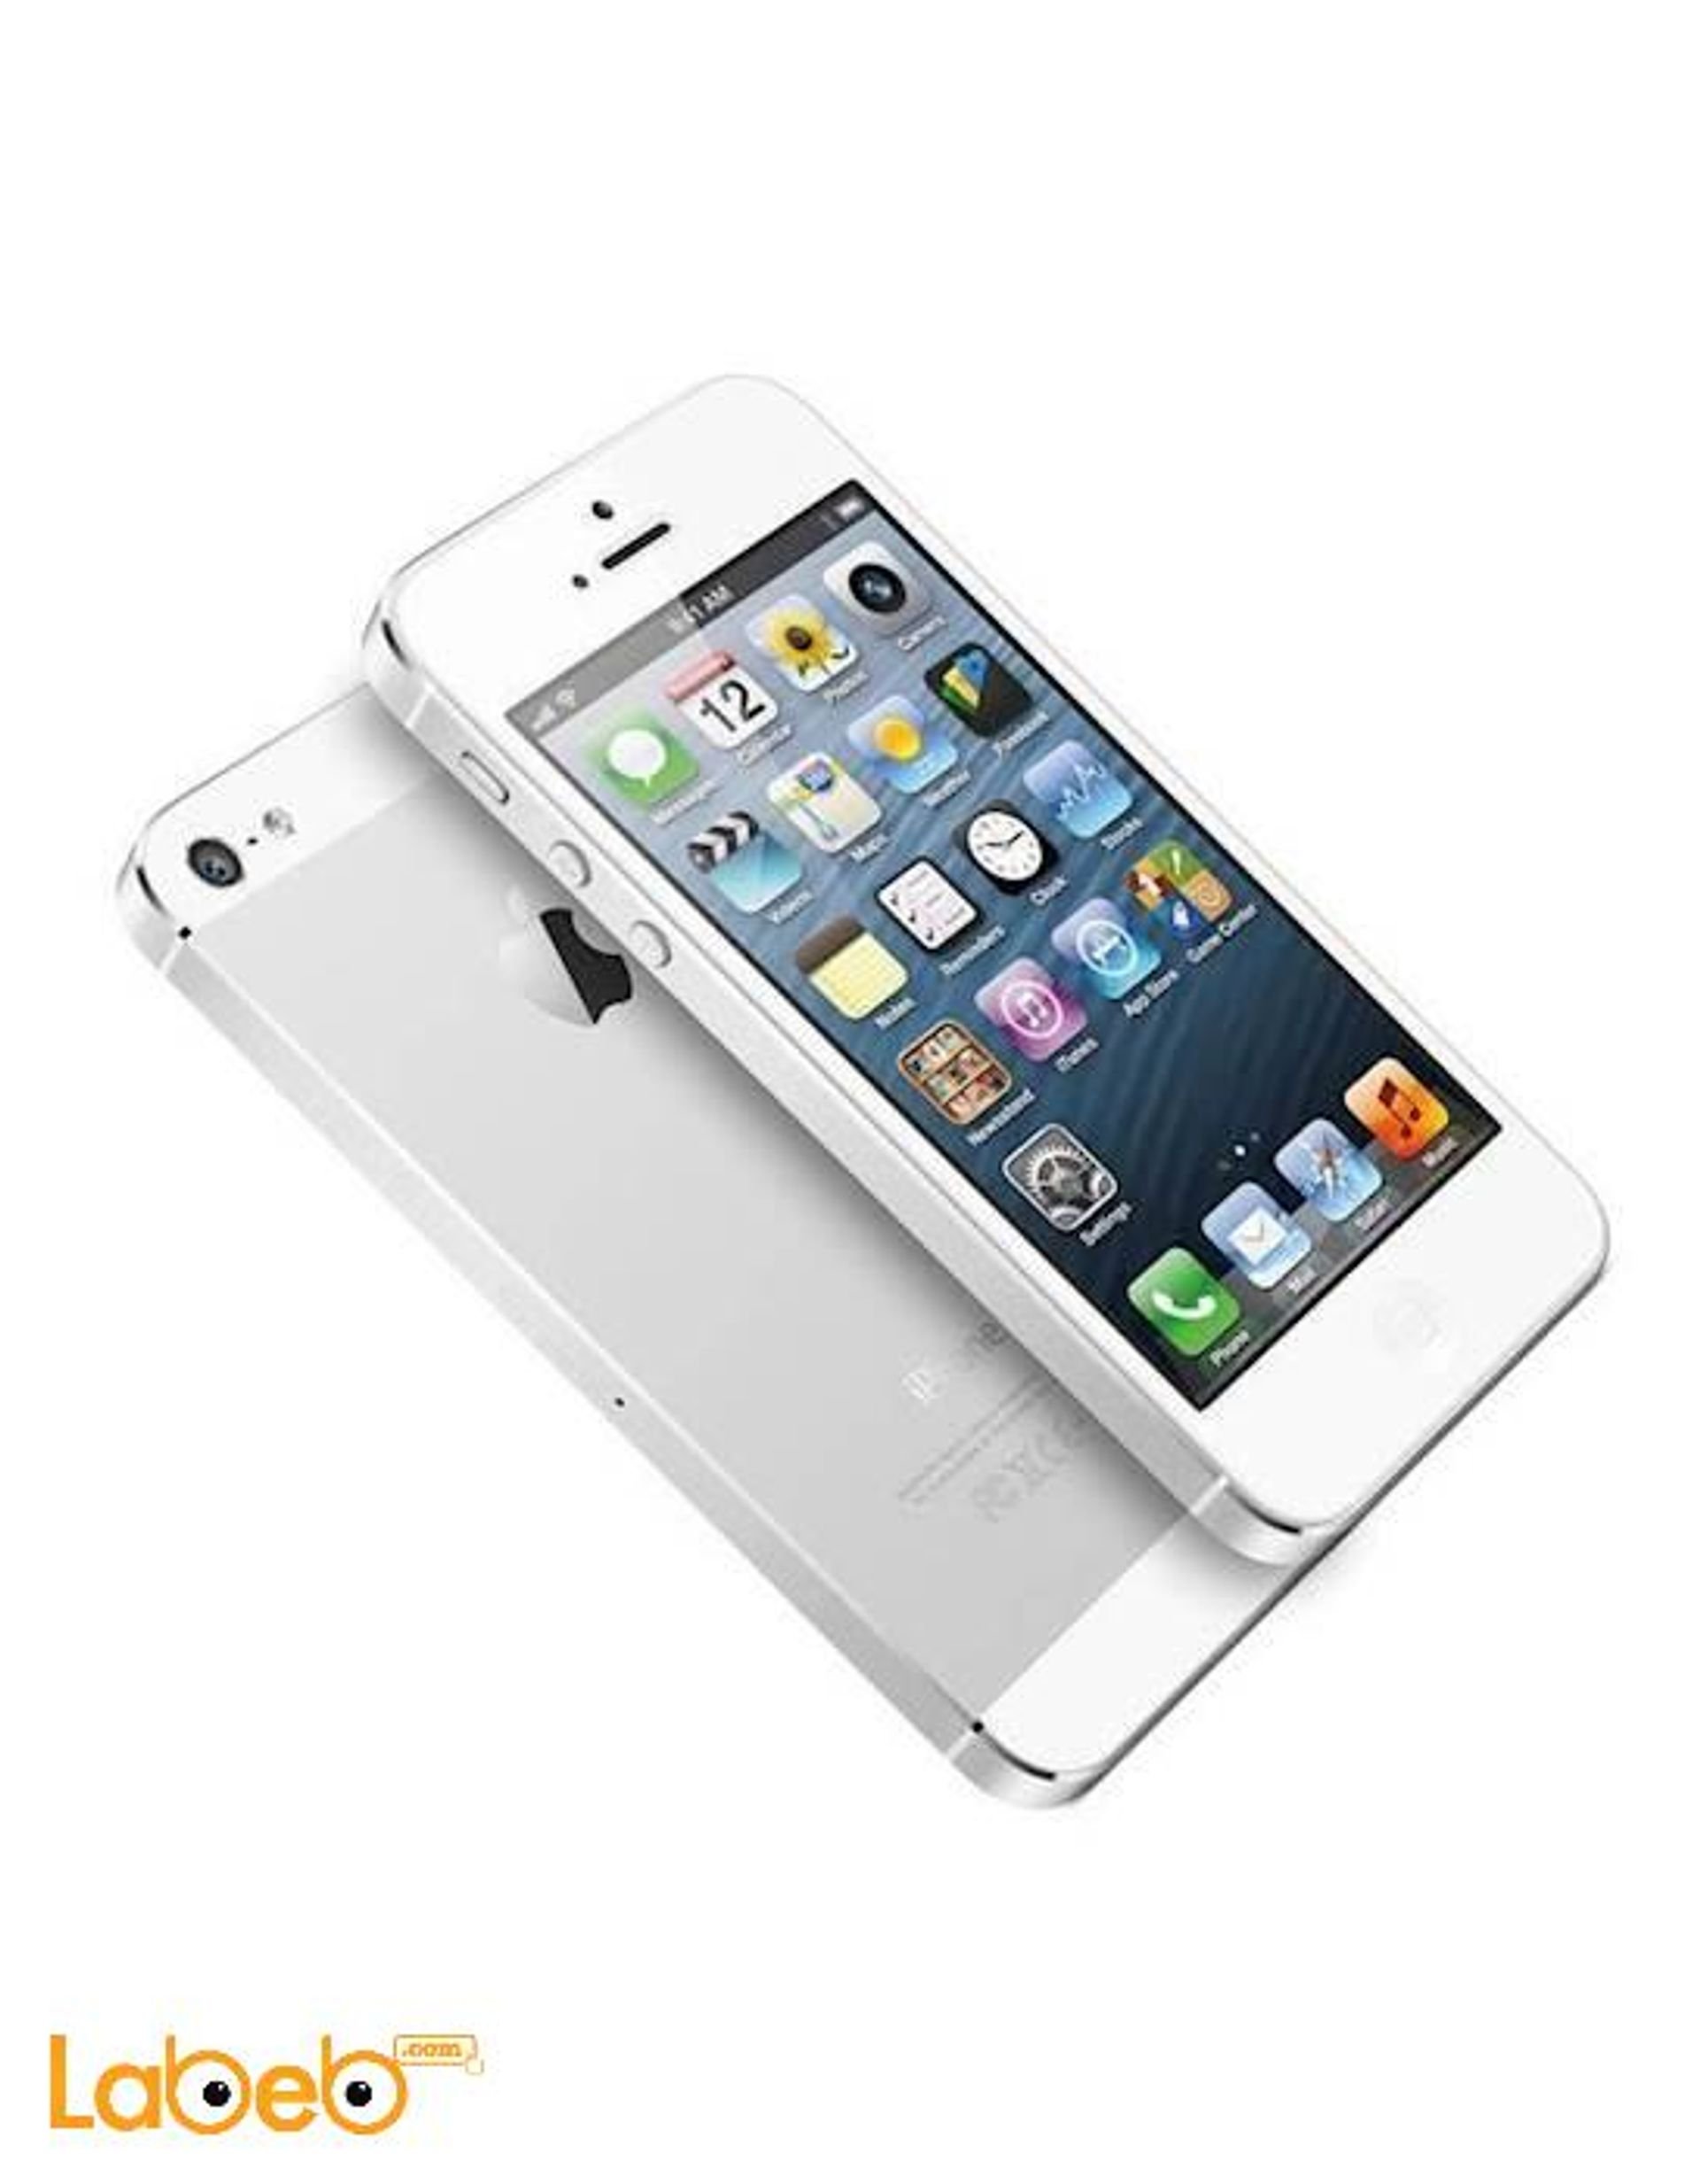 Какой телефон сколько стоит. Apple iphone 5s 16gb. Apple iphone 5s 64gb. Apple iphone 5s 32gb Gold. Apple iphone 5 16gb.